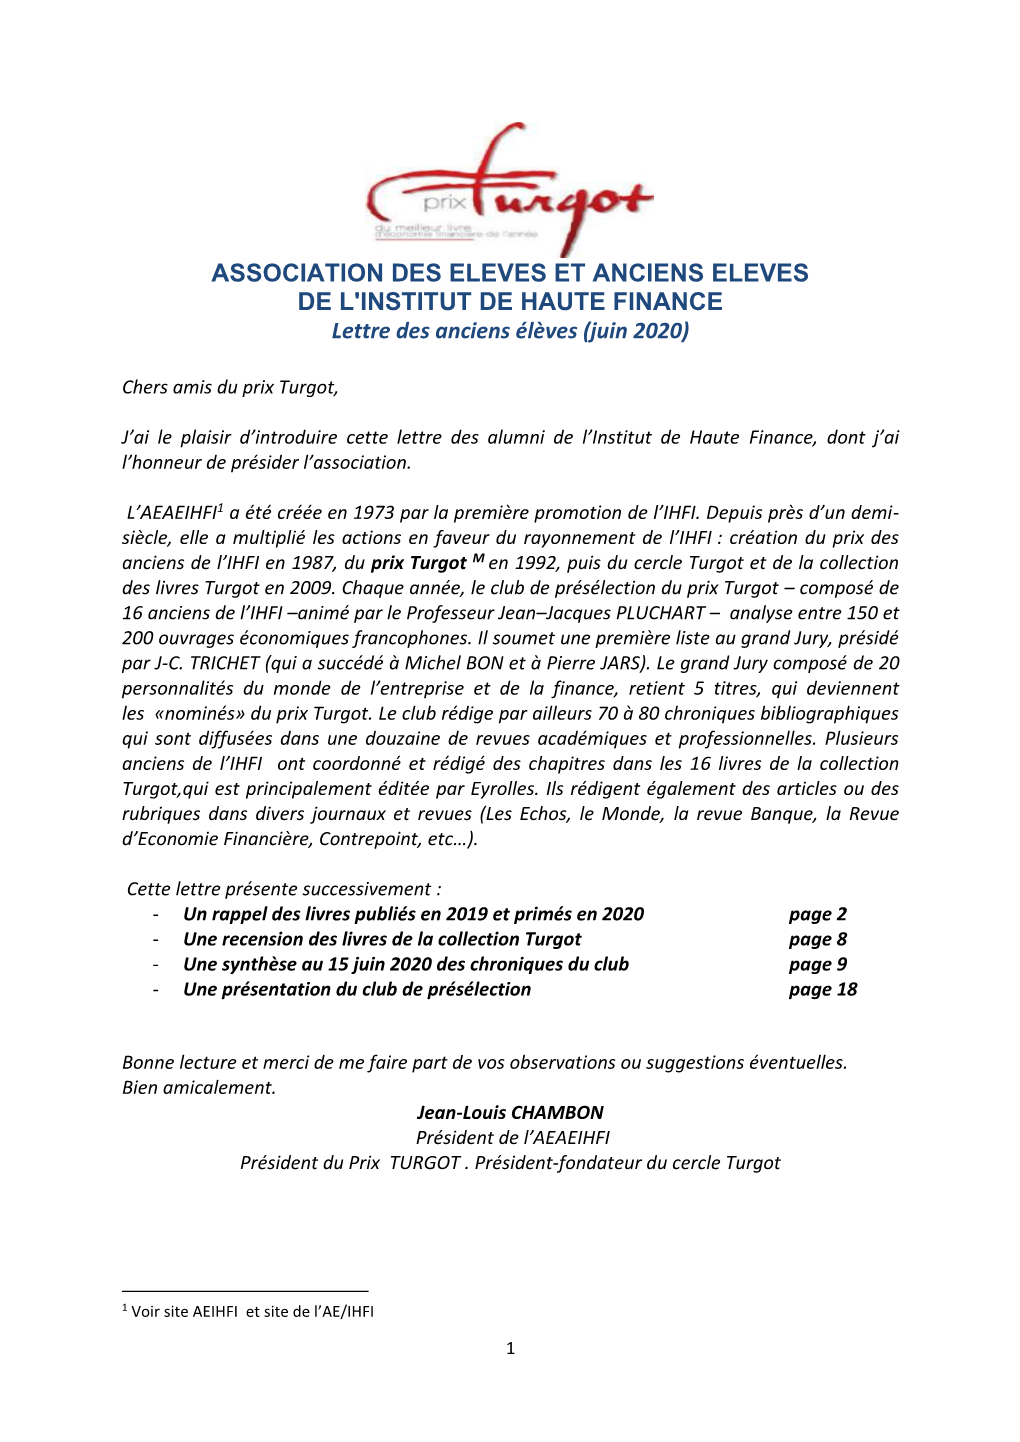 ASSOCIATION DES ELEVES ET ANCIENS ELEVES DE L'institut DE HAUTE FINANCE Lettre Des Anciens Élèves (Juin 2020)